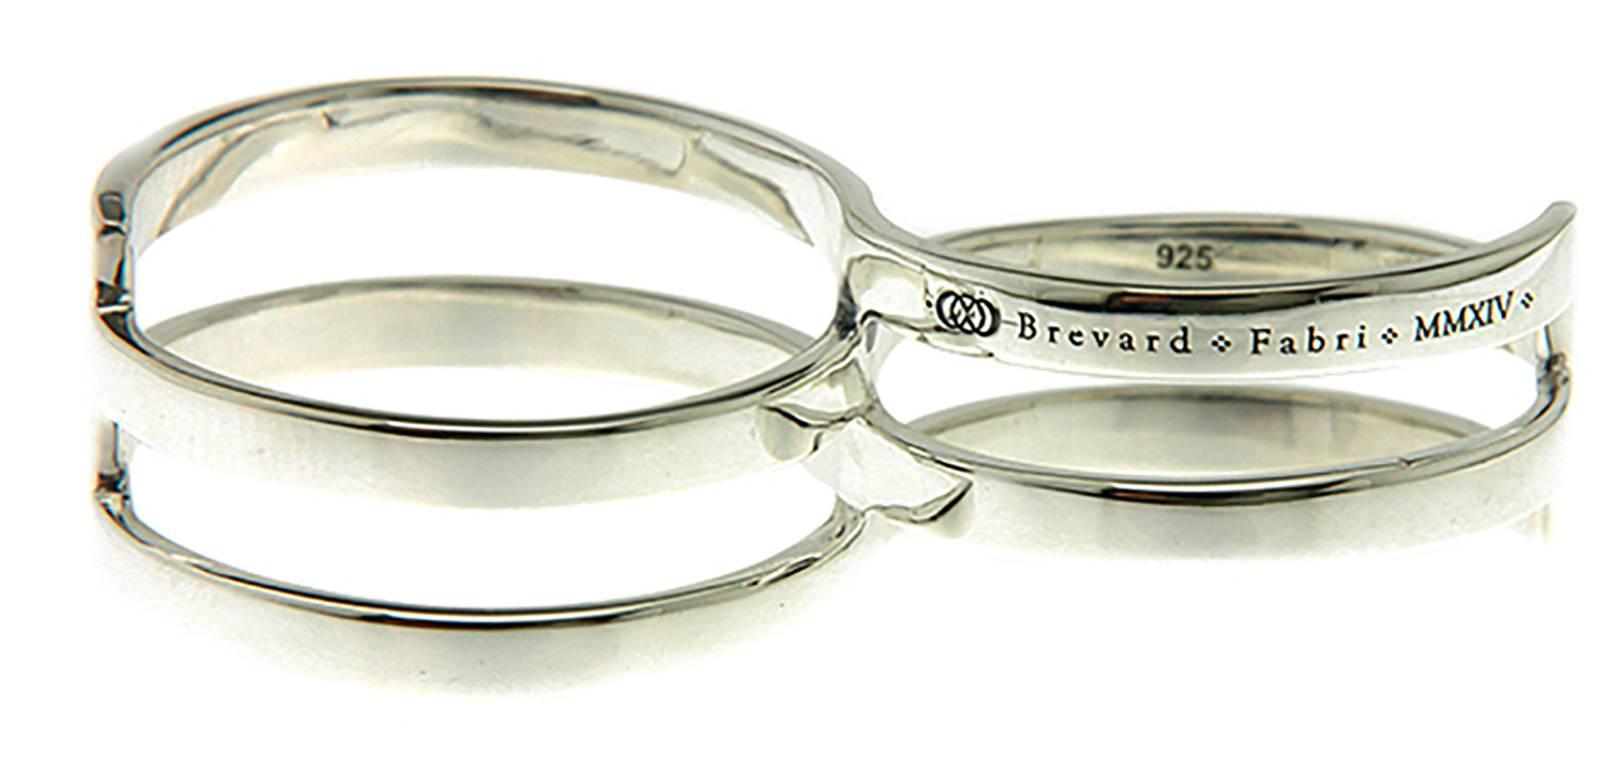 Dieser einzigartige Fabri Infinity Ring aus Sterlingsilber mit Doppelschleife ist eine Darstellung der endlosen Lebenszyklen. Mit seinem symmetrischen Design und seiner göttlichen Ausgewogenheit zeigt dieser einzigartige Ring einen neuen Stil und